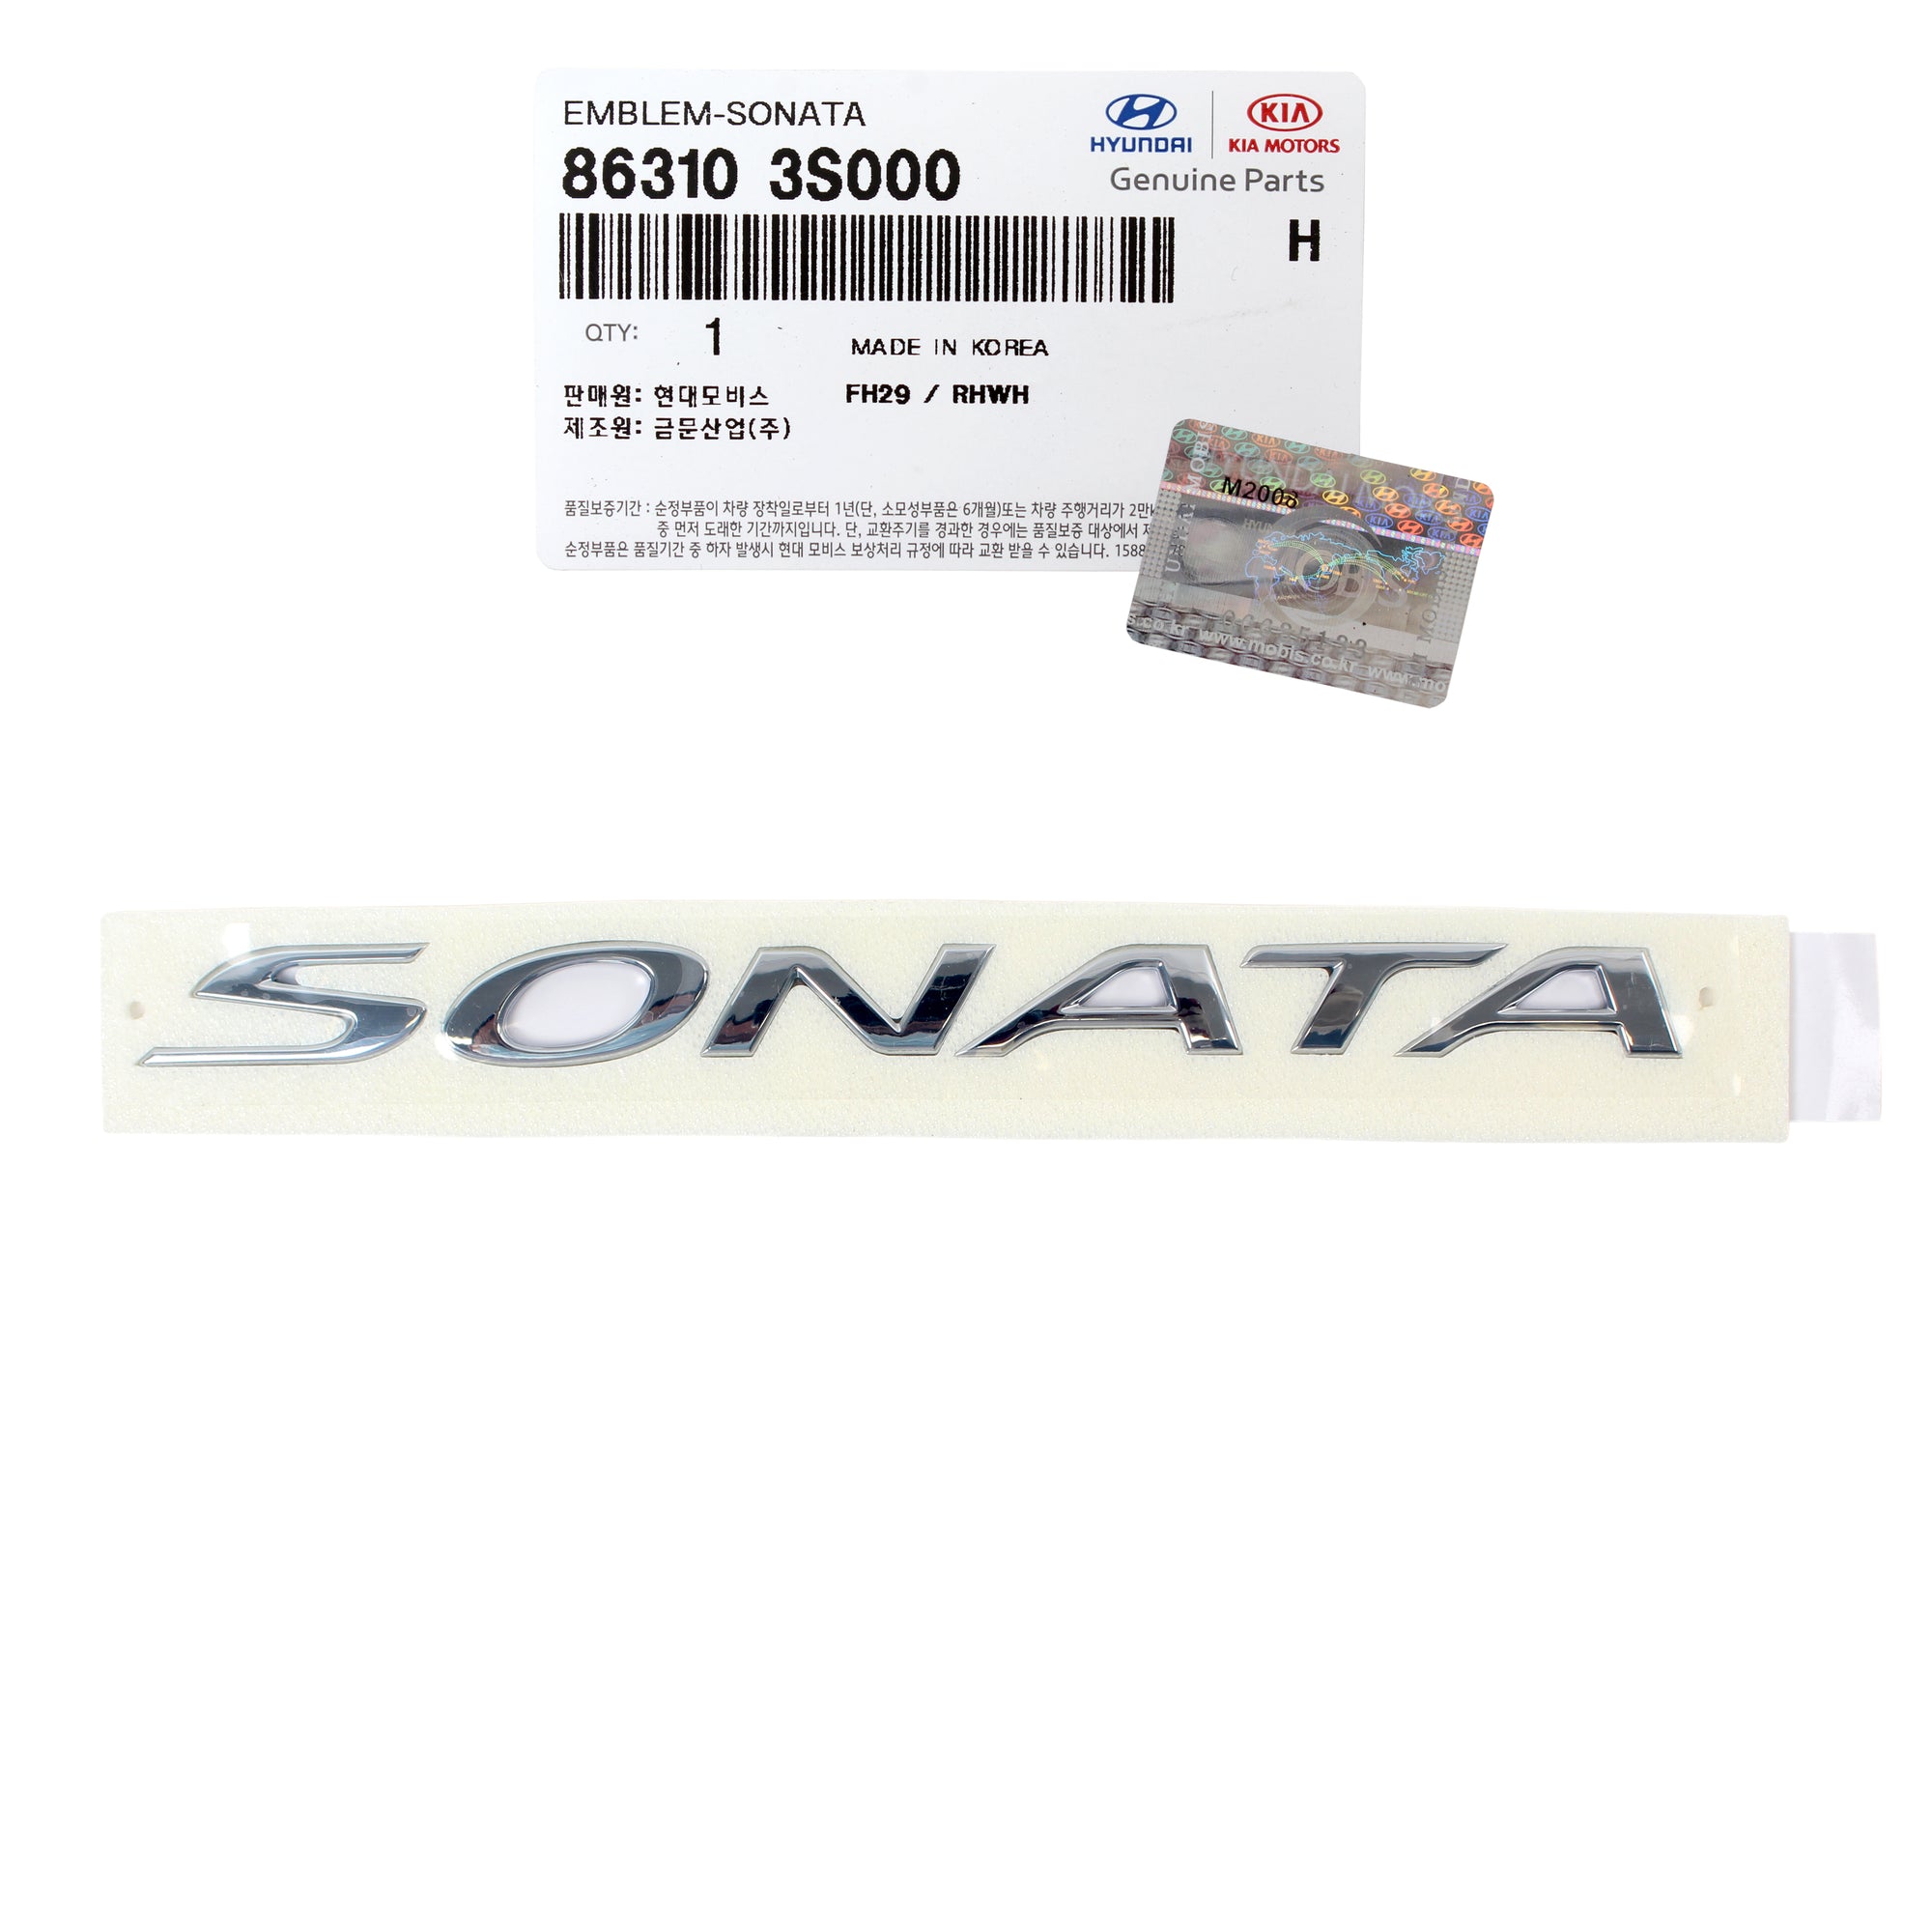 GENUINE REAR SONATA Logo Emblem for 2011-2014 Hyundai Sonata 863103S000